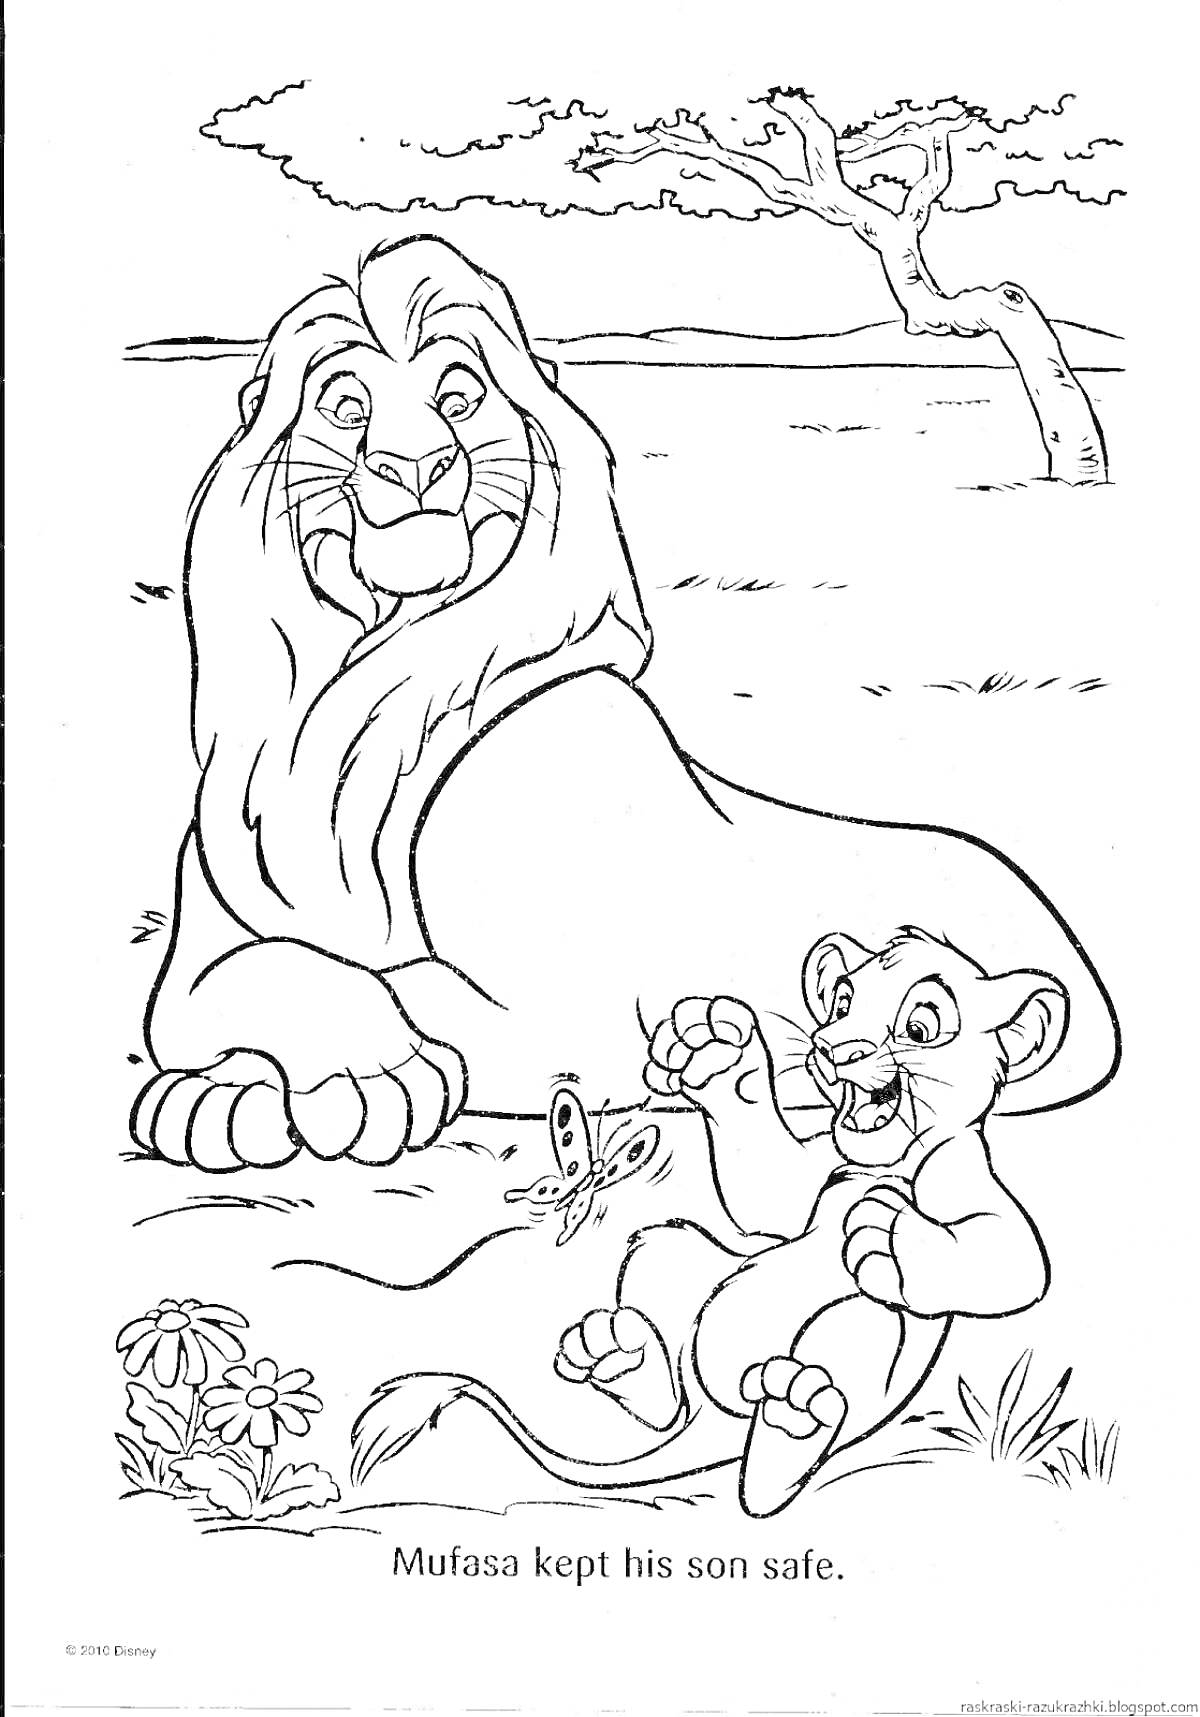 Лев Мфаса лежит рядом с улыбающимся львенком Симуой, который играет с бабочками. На заднем плане дерево и природа.